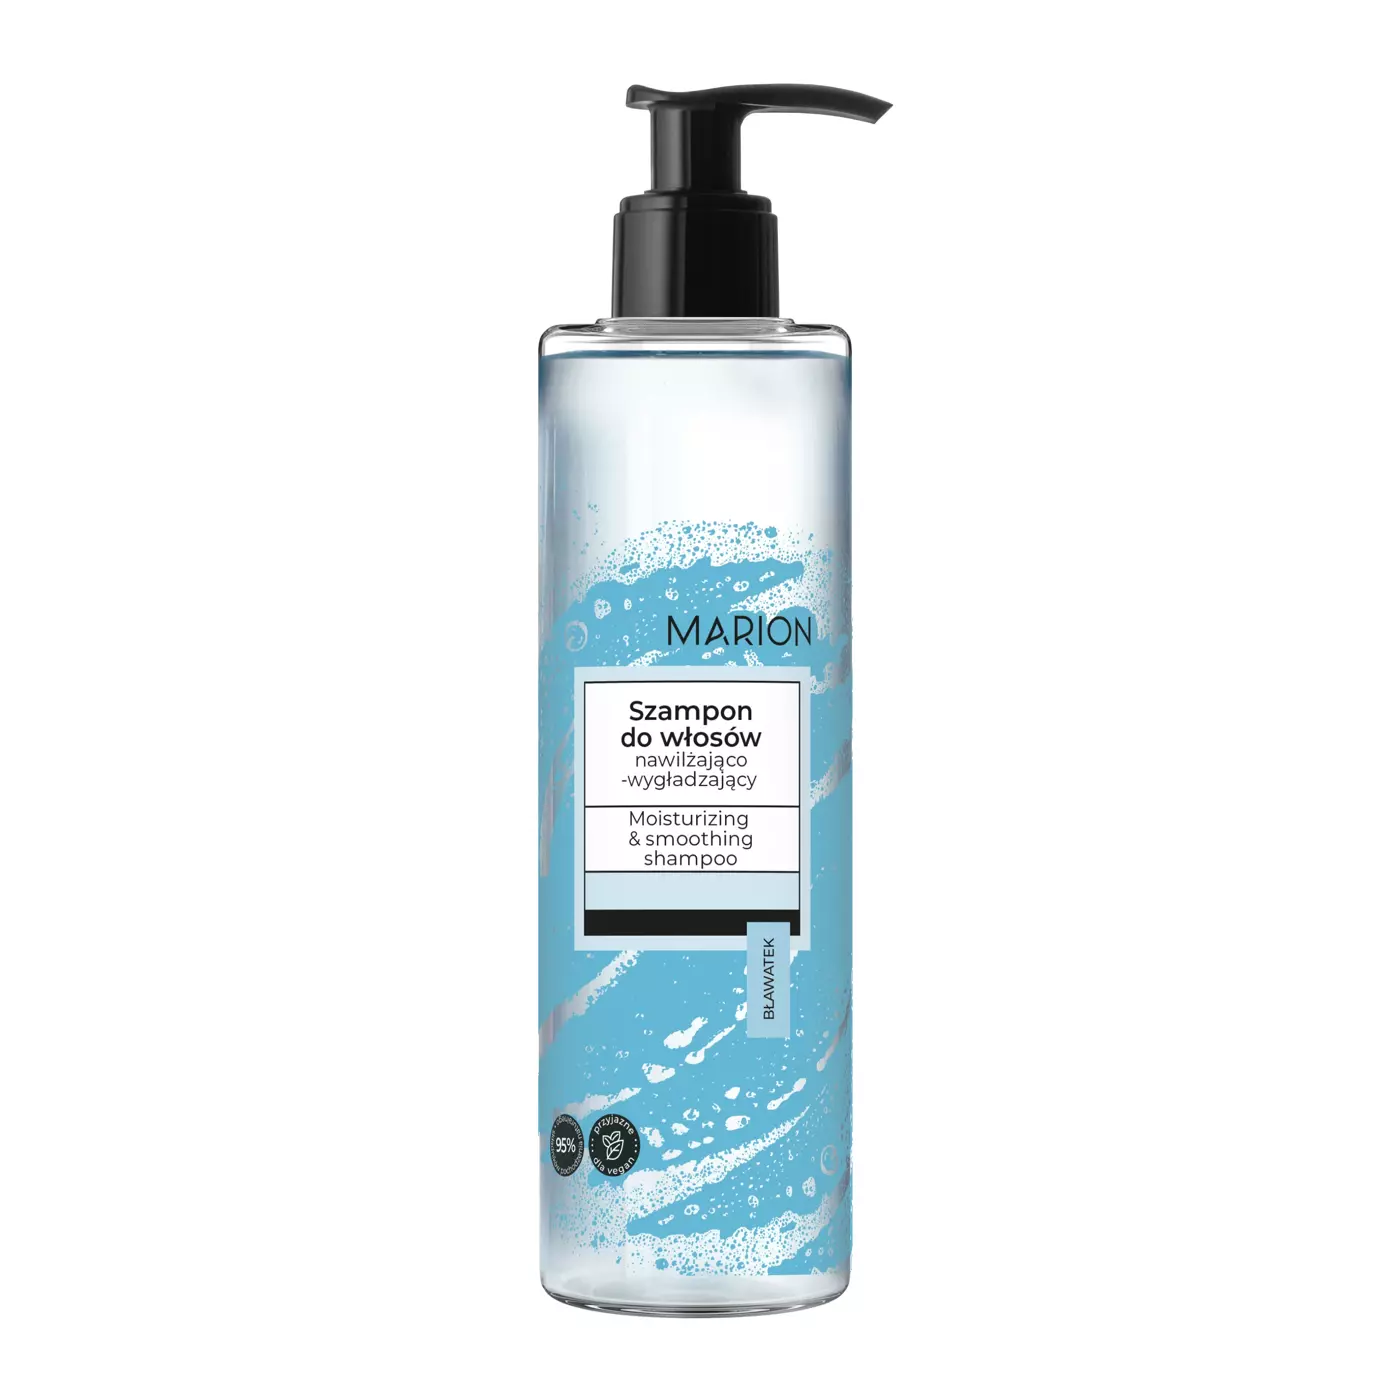 marion szampon przeciw wypadaniu arganowy